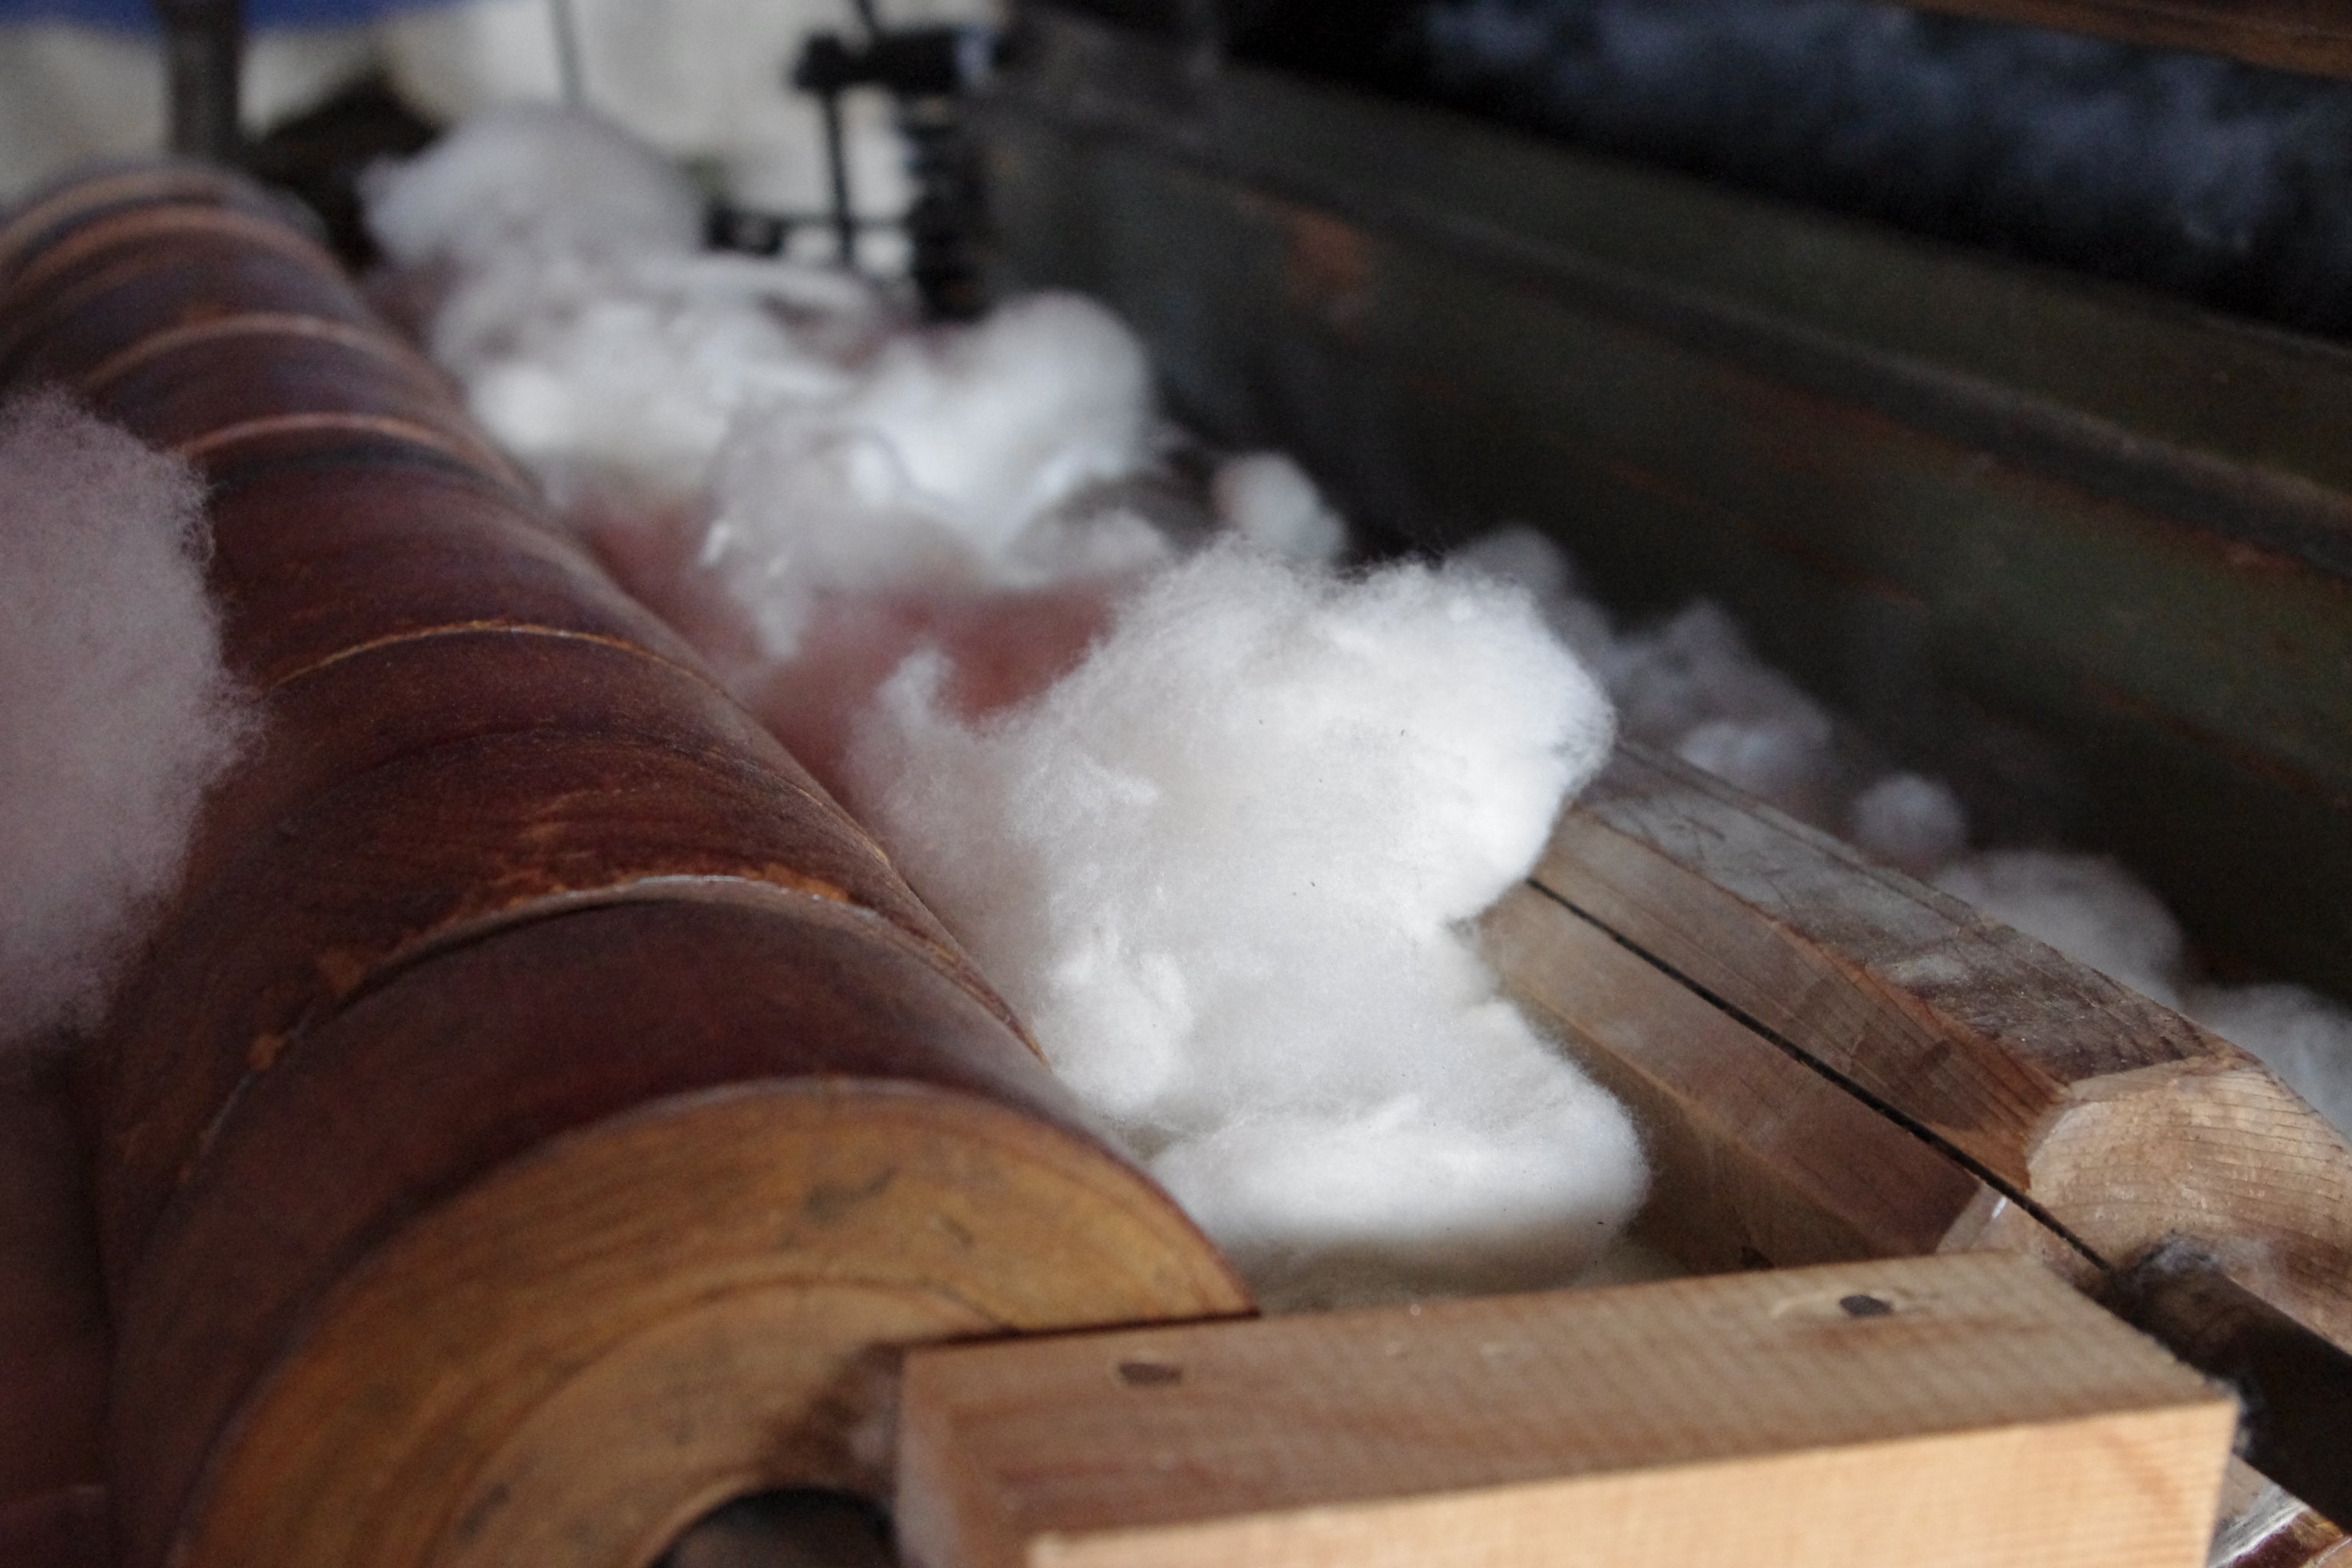 綿繰り機とは実綿をローラーの間に挟んで、回しながら種子を取り除く器具のことを指します。収穫した実綿には、たくさんの種子がびっしりと絡まるようにくっついているため取るには少々手間がかかります。取り出した綿は繊維となり糸へと繋がっていきます。わたから わたからつむぐ マインド松井 日本の綿 和綿 綿 コットン 100% 自給率 オーガニックコットン 無農薬 わめん 日本製  国内 国産 国内栽培 栽培 綿繰り 綿繰り機 使い方 綿打ち 洗う 洗い方 国内製造 製造 過程 工程 育て方 やり方 弓 ふとん 布団 綿の実 つみ 手仕事 手回し 綿繰り ろくろ 実繰り さねくり 綿とり わたとり 洋綿 種類 綿花 綿の木 生地 綿の特徴 手作り 販売 ほぐし方 綿とは 和綿とは オーガニックコットンとは 日本の綿 和綿 綿 コットン オーガニックコットン 商品 無農薬 わめん 日本製  国内 国産 国内栽培 栽培 日本の綿 和綿 綿 コットン 100% 自給率 綿 わた コットン オーガニックコットン 綿１００％　コットン１００％　オーガニックコットン１００％